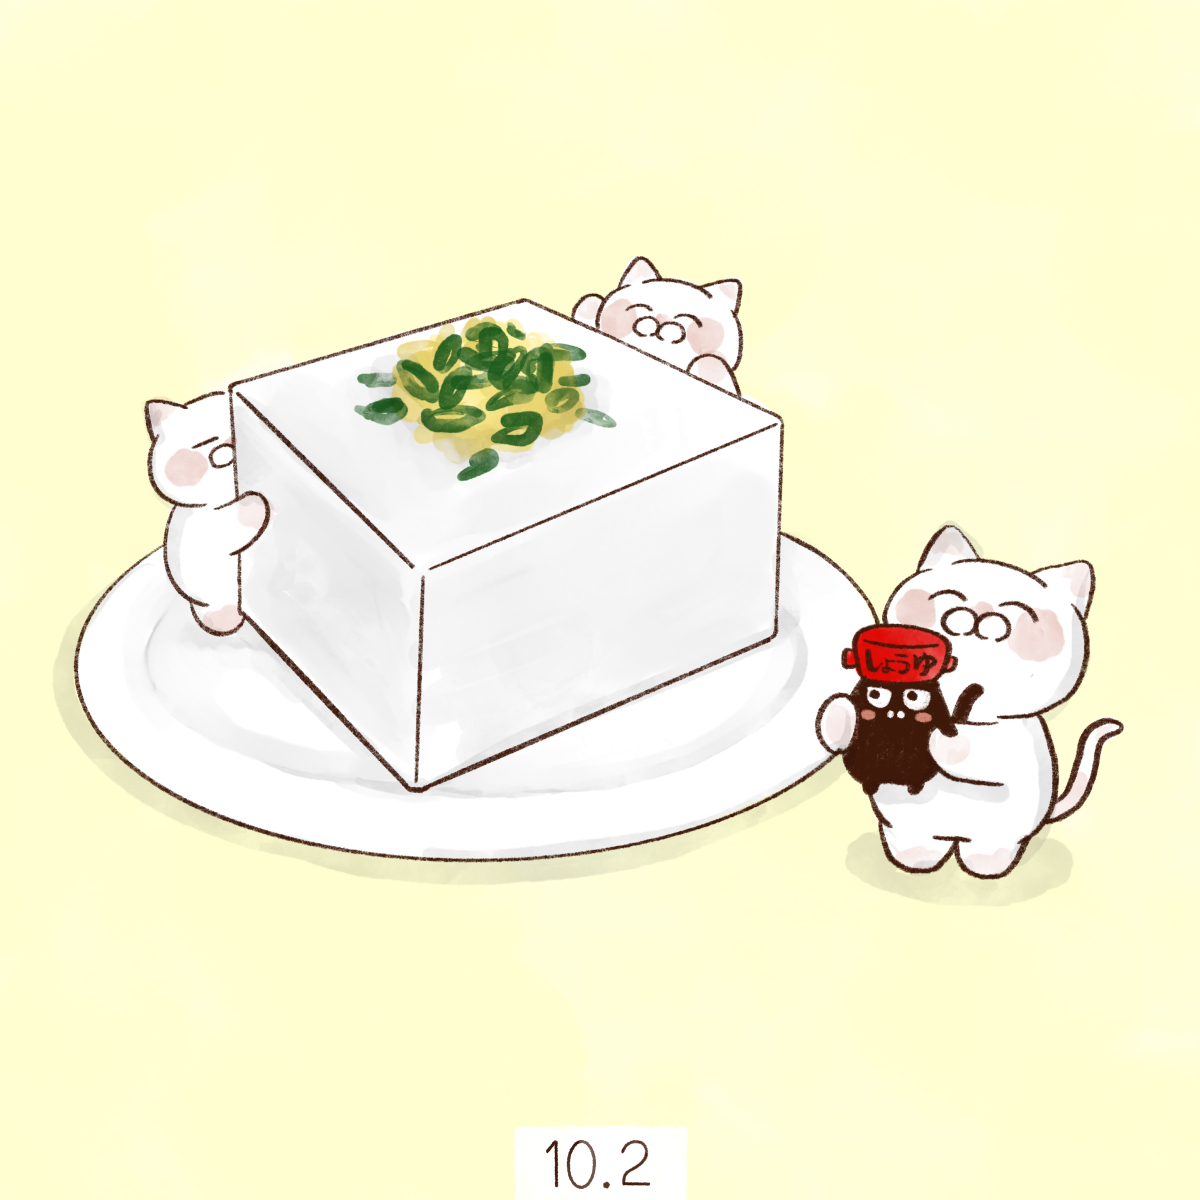 「10月2日【豆腐の日】
102→とうふ、の語呂合わせから日本豆腐協会が1993年」|大和猫のイラスト